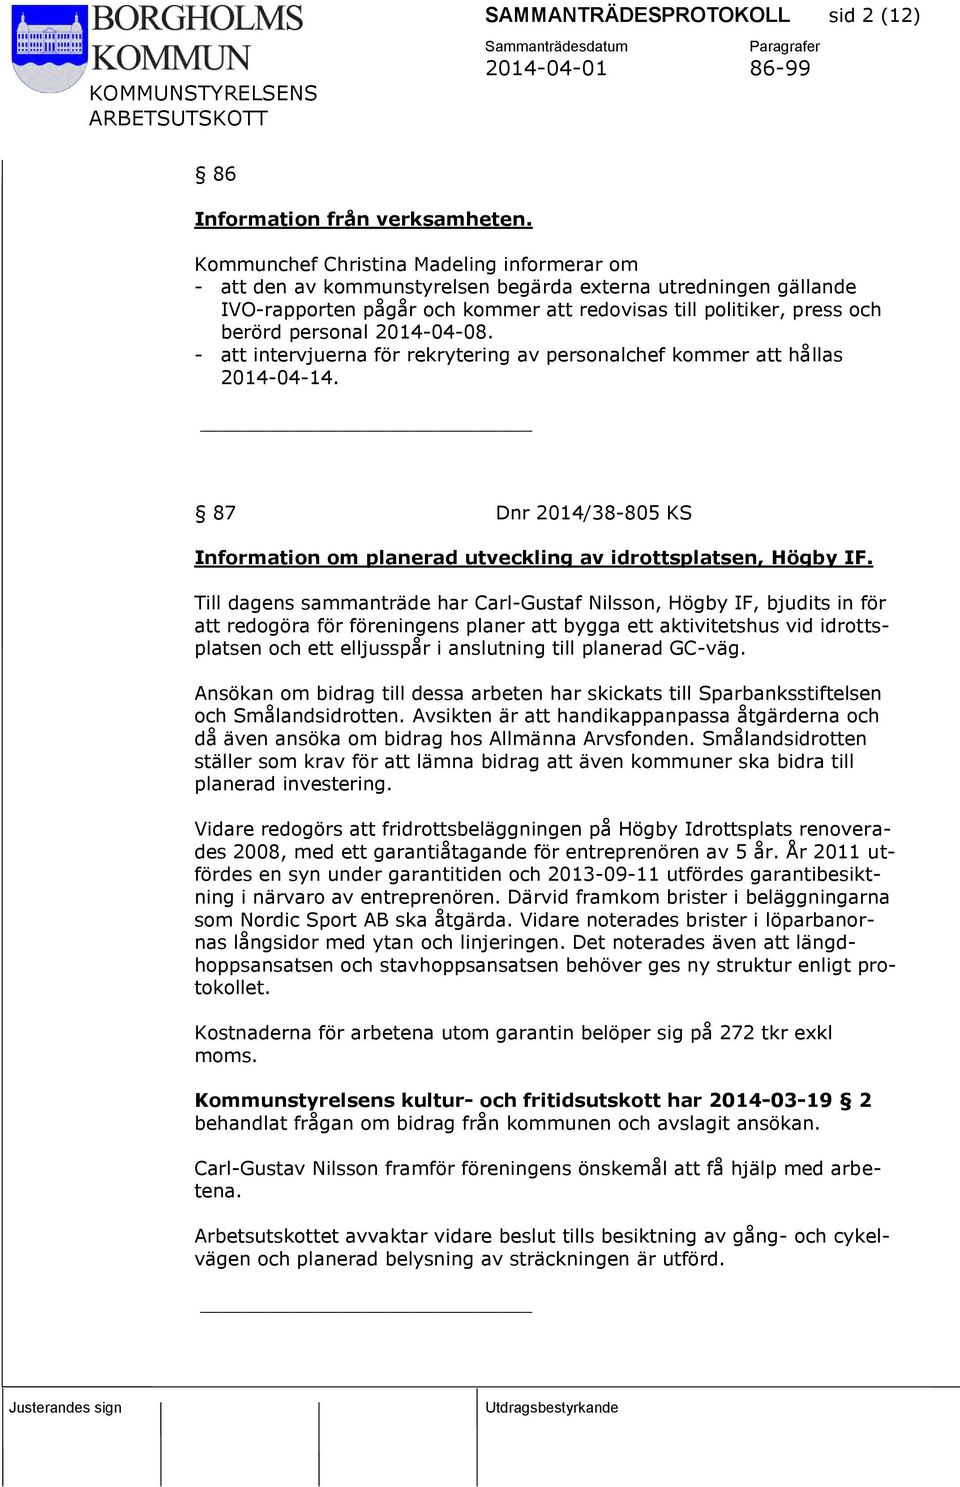 2014-04-08. - att intervjuerna för rekrytering av personalchef kommer att hållas 2014-04-14. 87 Dnr 2014/38-805 KS Information om planerad utveckling av idrottsplatsen, Högby IF.